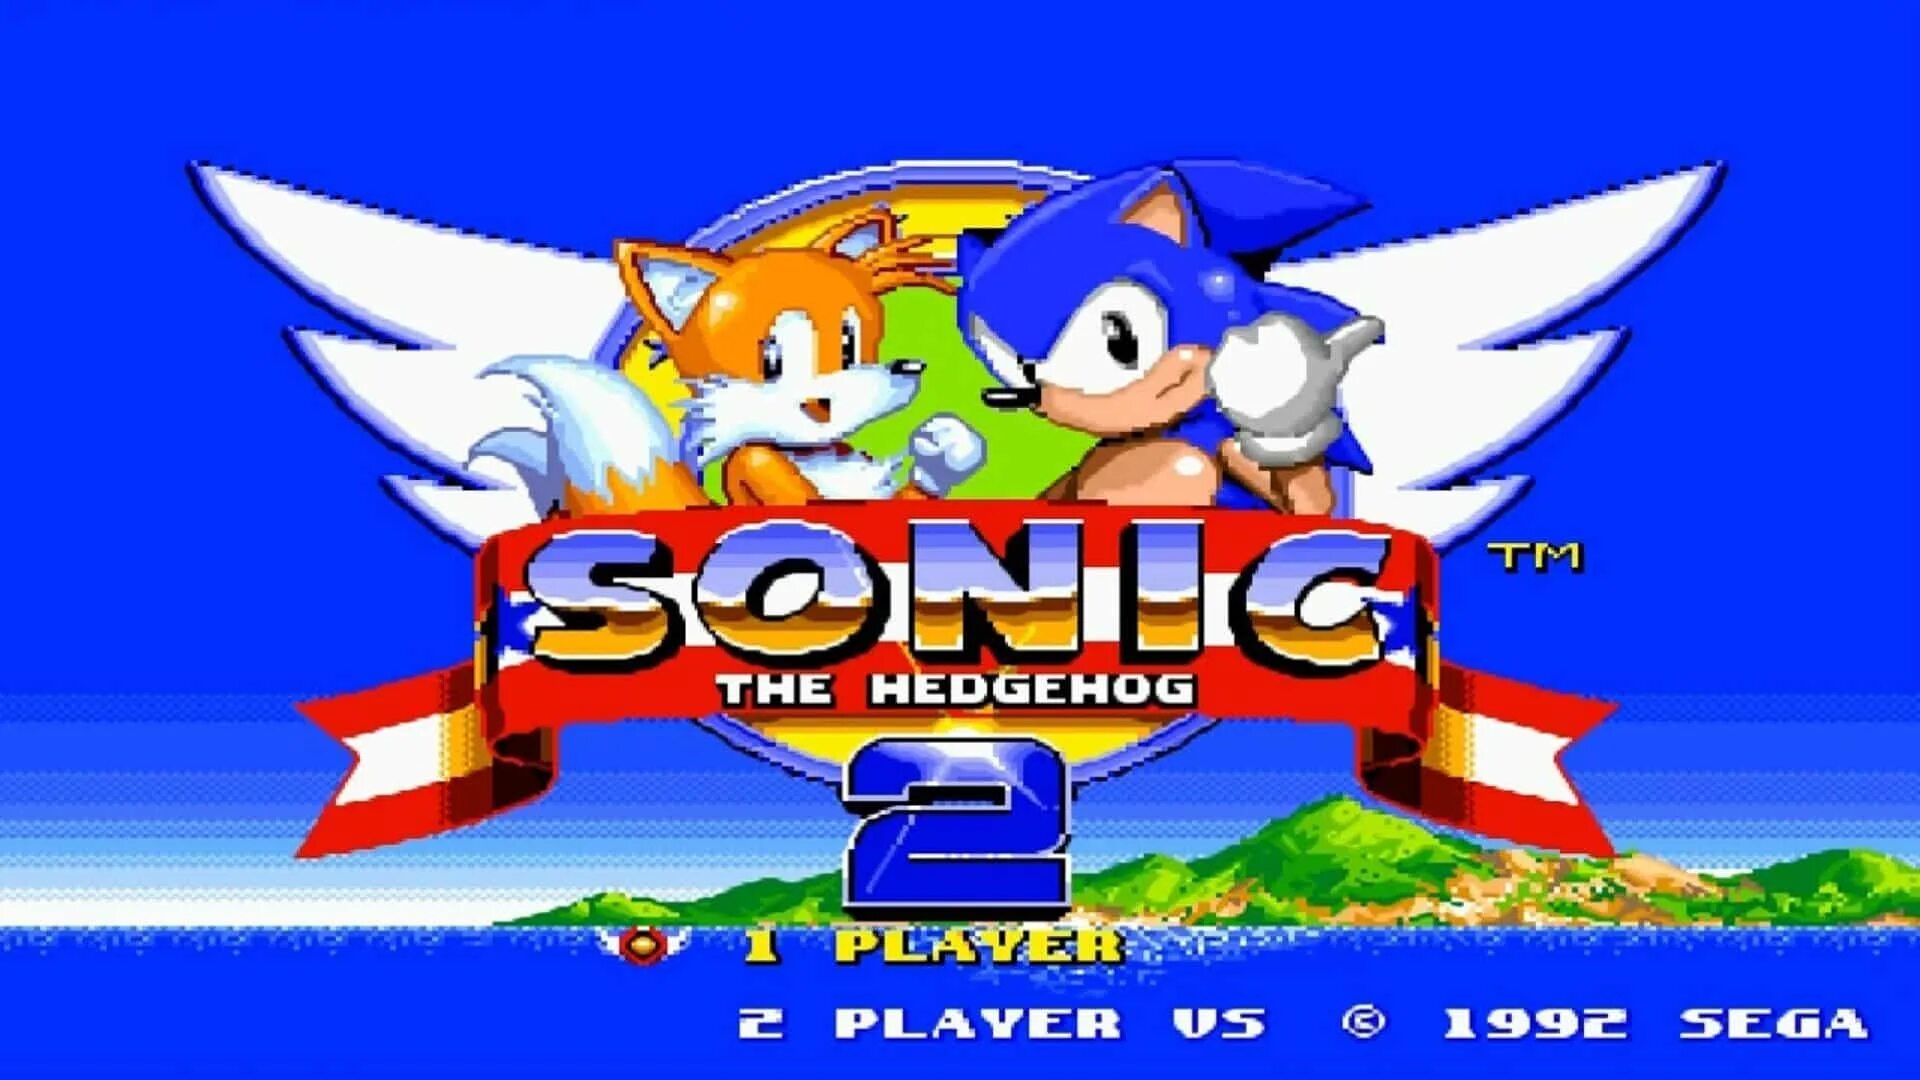 Sonic the hedgehog 2 андроид. Соник в игре Соник 2. Sonic the Hedgehog 2 (16 бит). Ежик Соник 2. Sonic the Hedgehog игра.